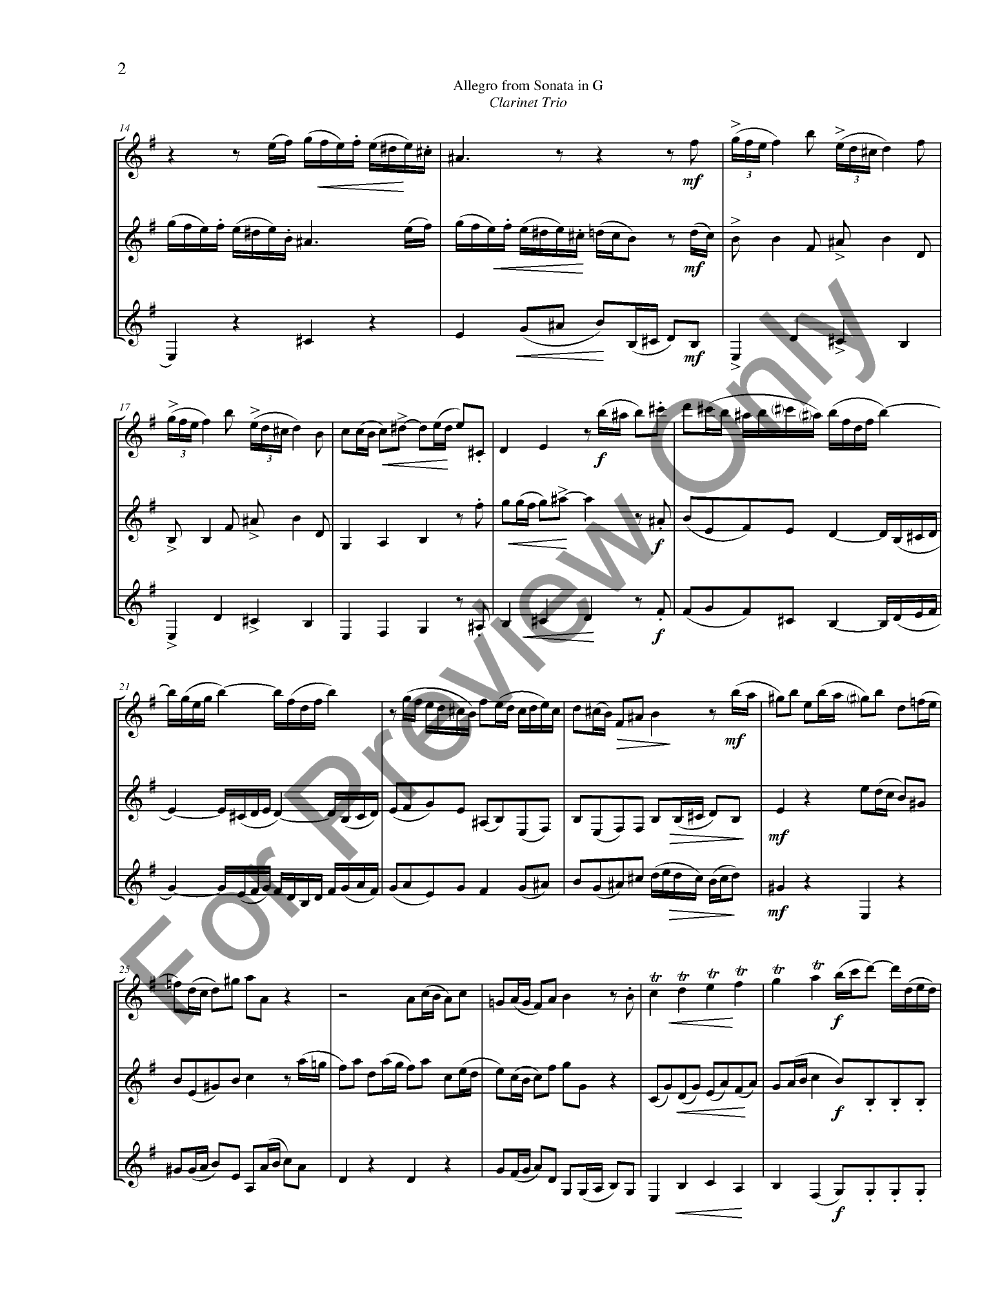 Allegro from Sonata in G Clarinet Trio P.O.D.